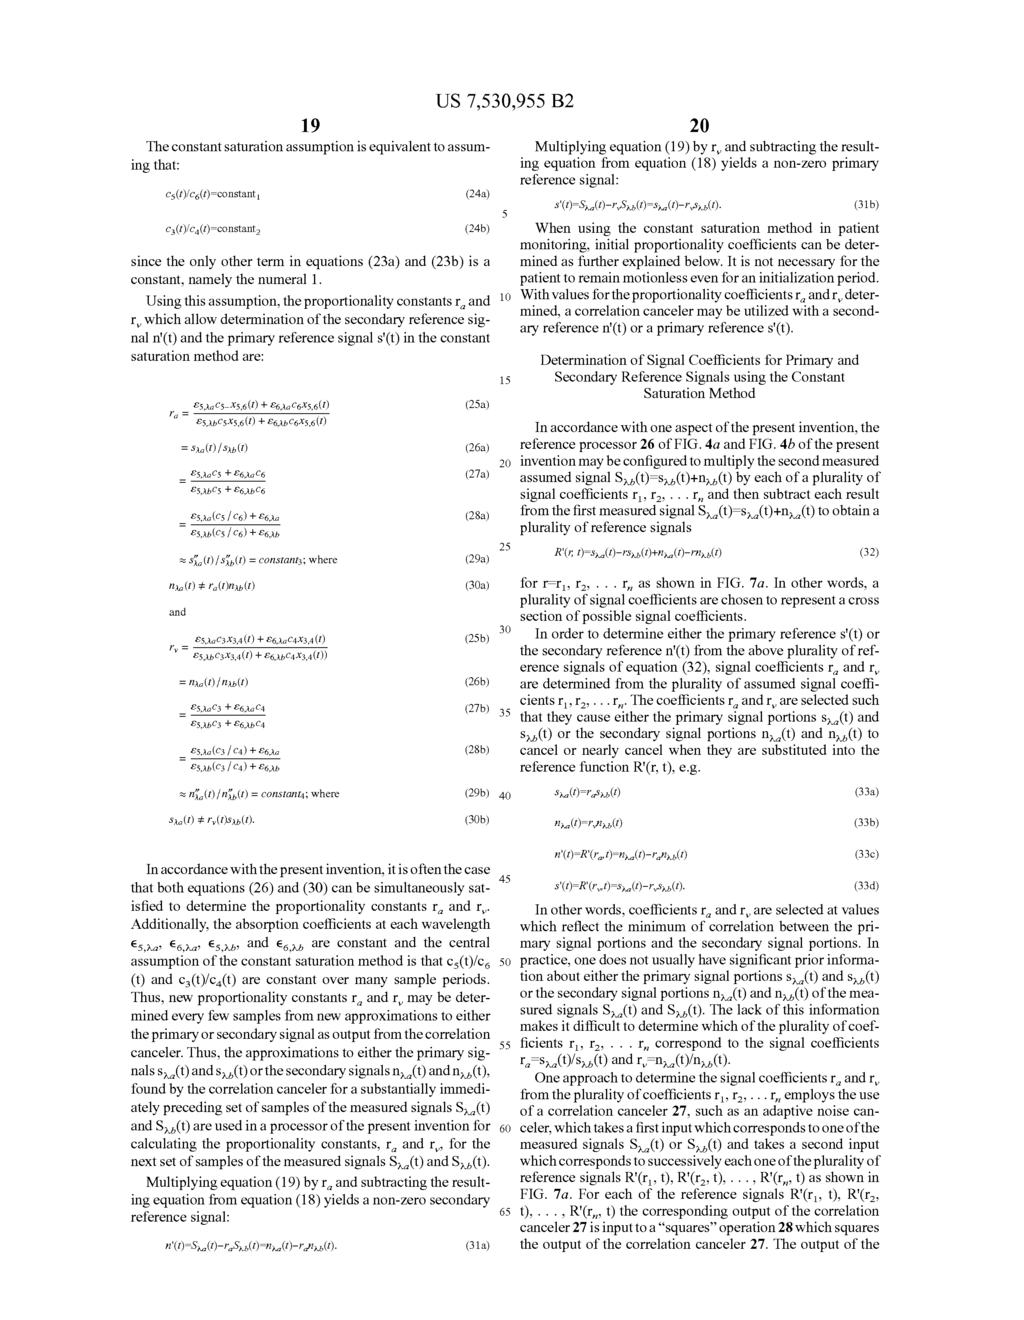 Case 1:11-cv-00742-UNA Document 1-1